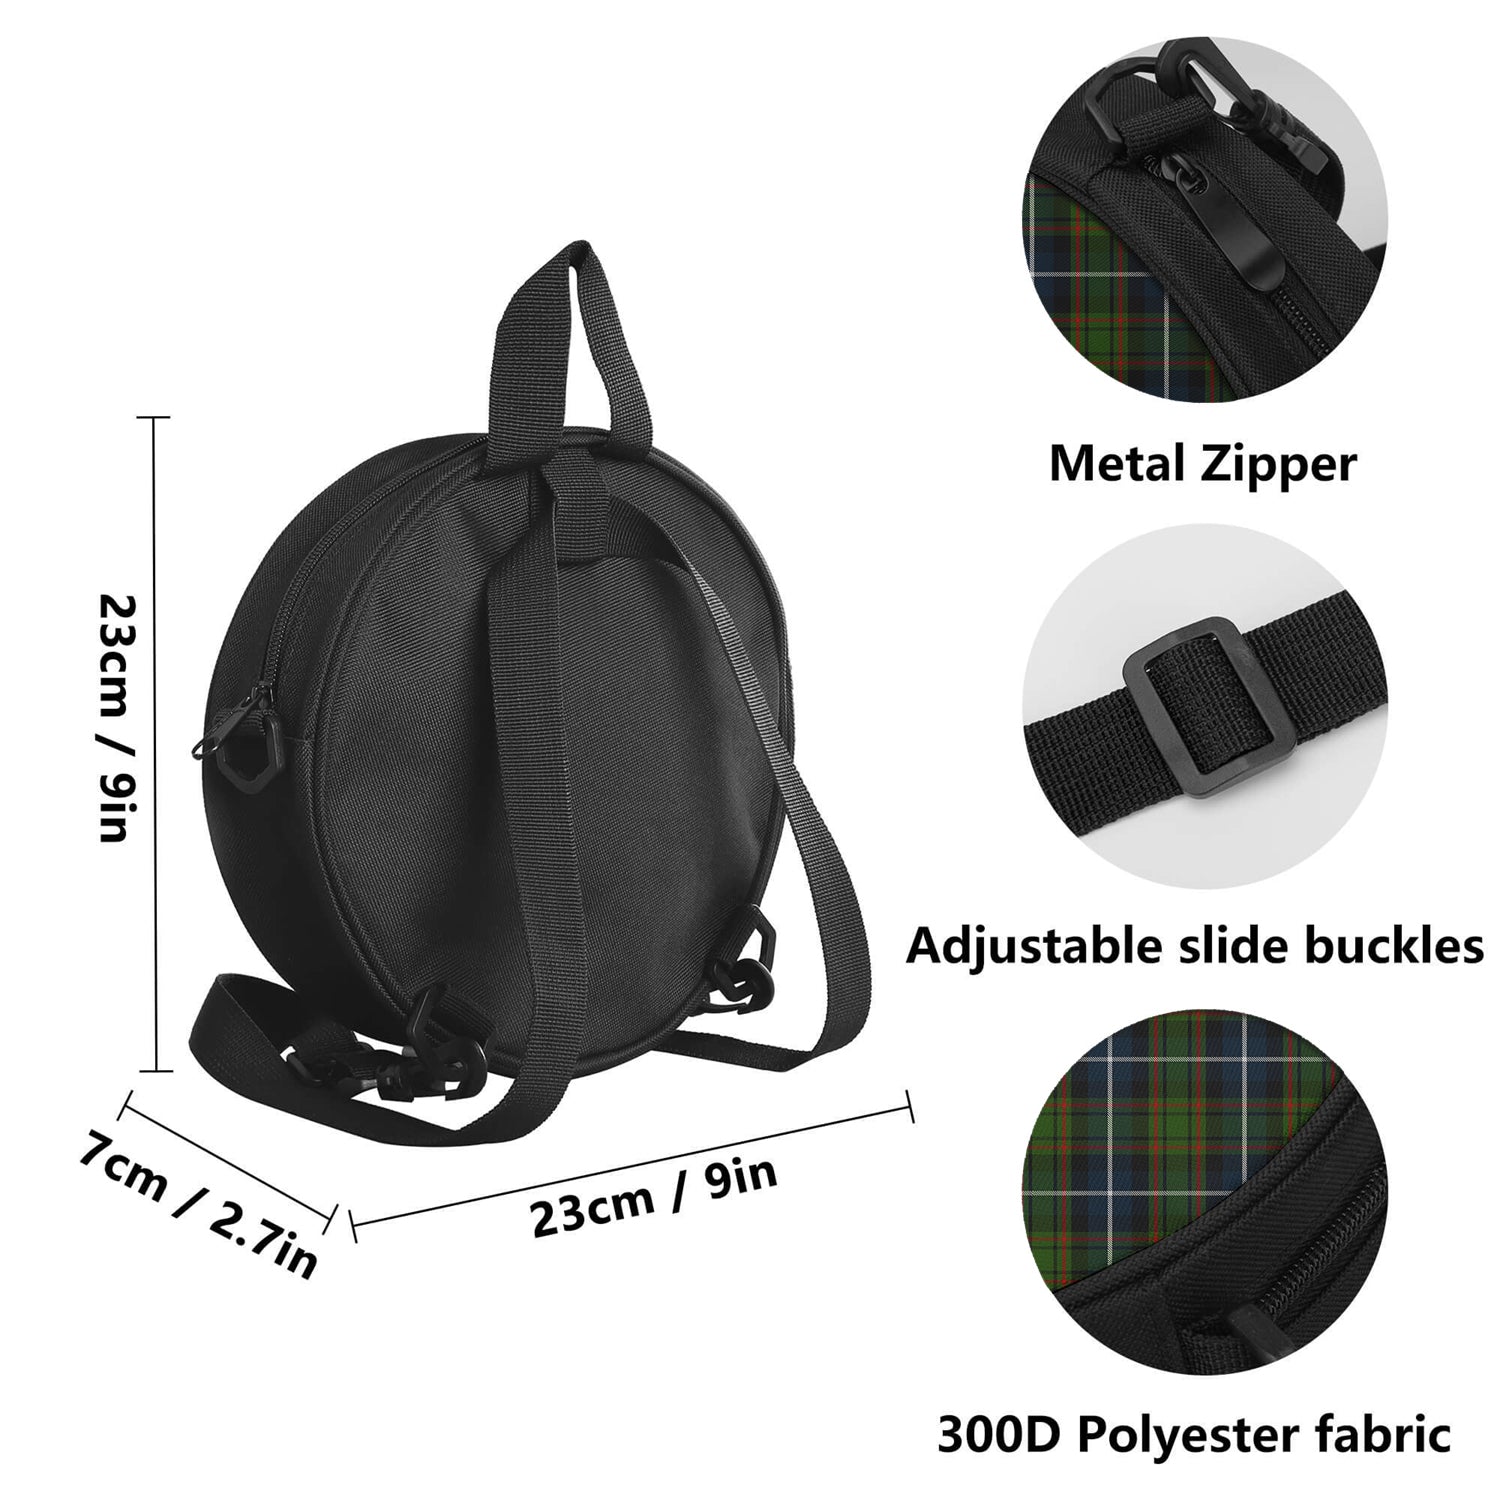 macrae-hunting-tartan-round-satchel-bags